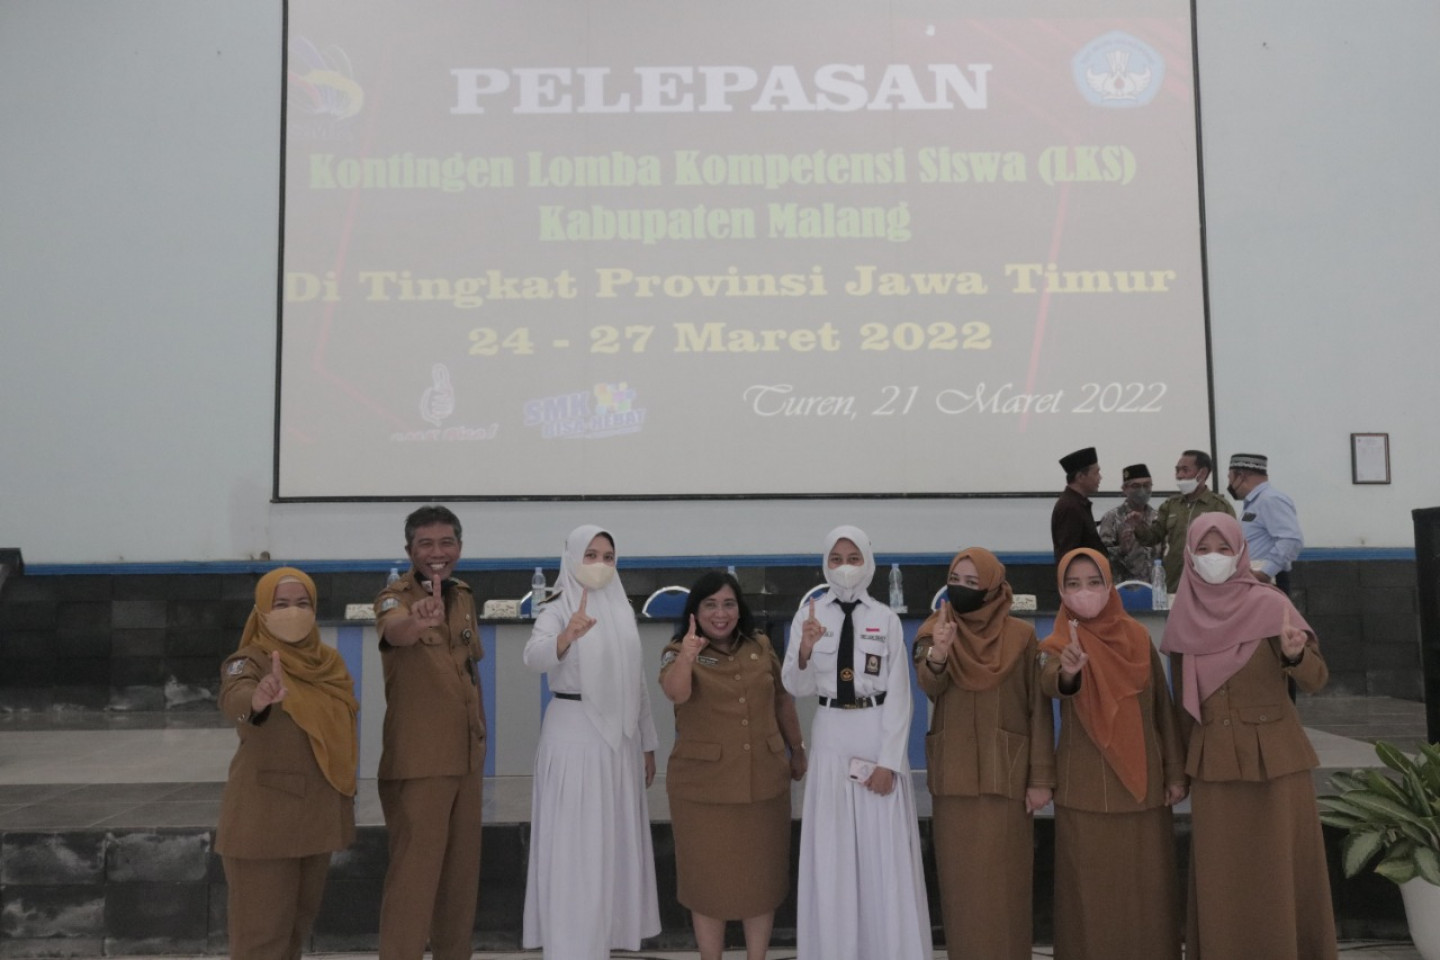 SMK Negeri 1 Turen Berpartisipasi dalam Pelepasan Kontingen LKS di Tingkat Provinsi Jawa Timur